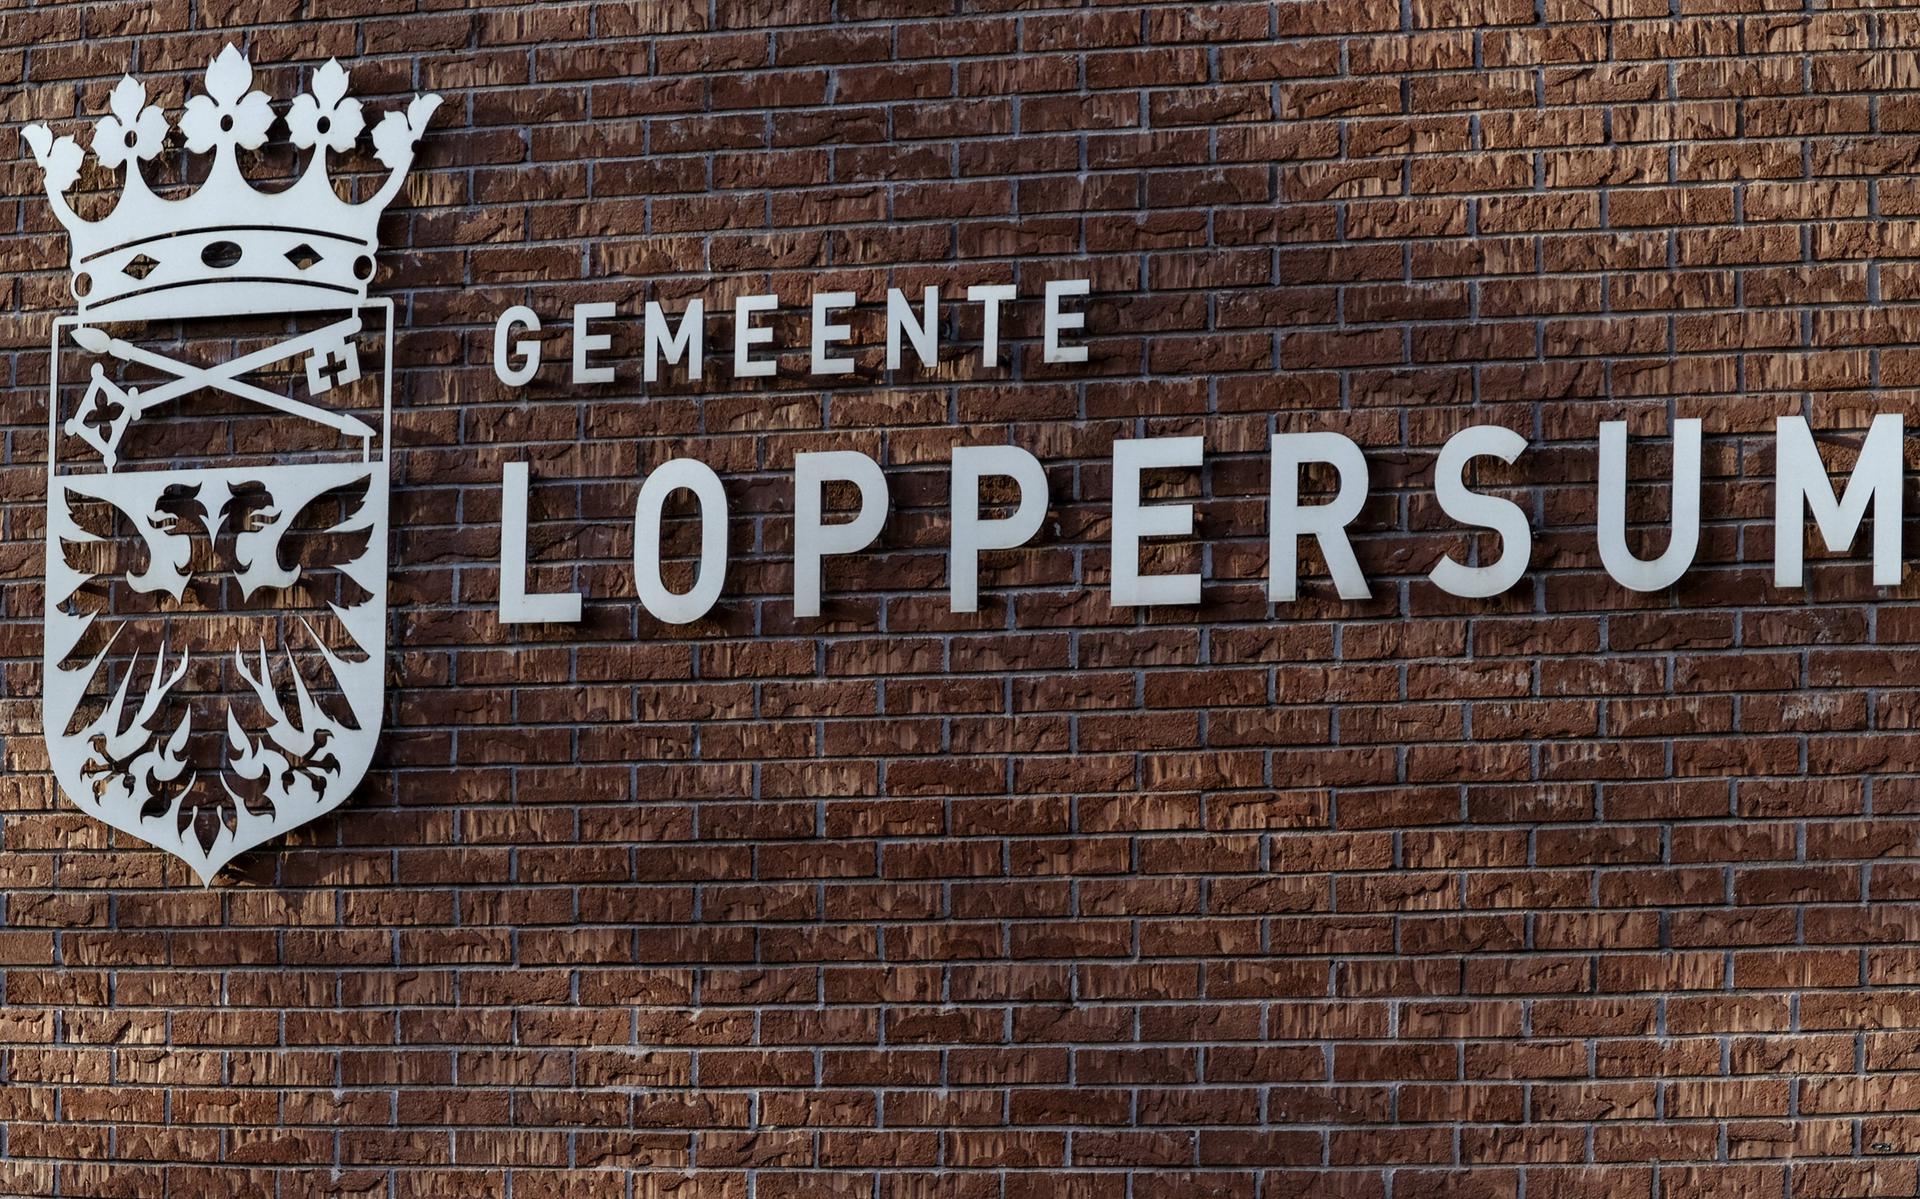 Loppersum 21 oktober 2017. Op de gevel van het gemeentehuis staat duidelijk: gemeente Loppersum.